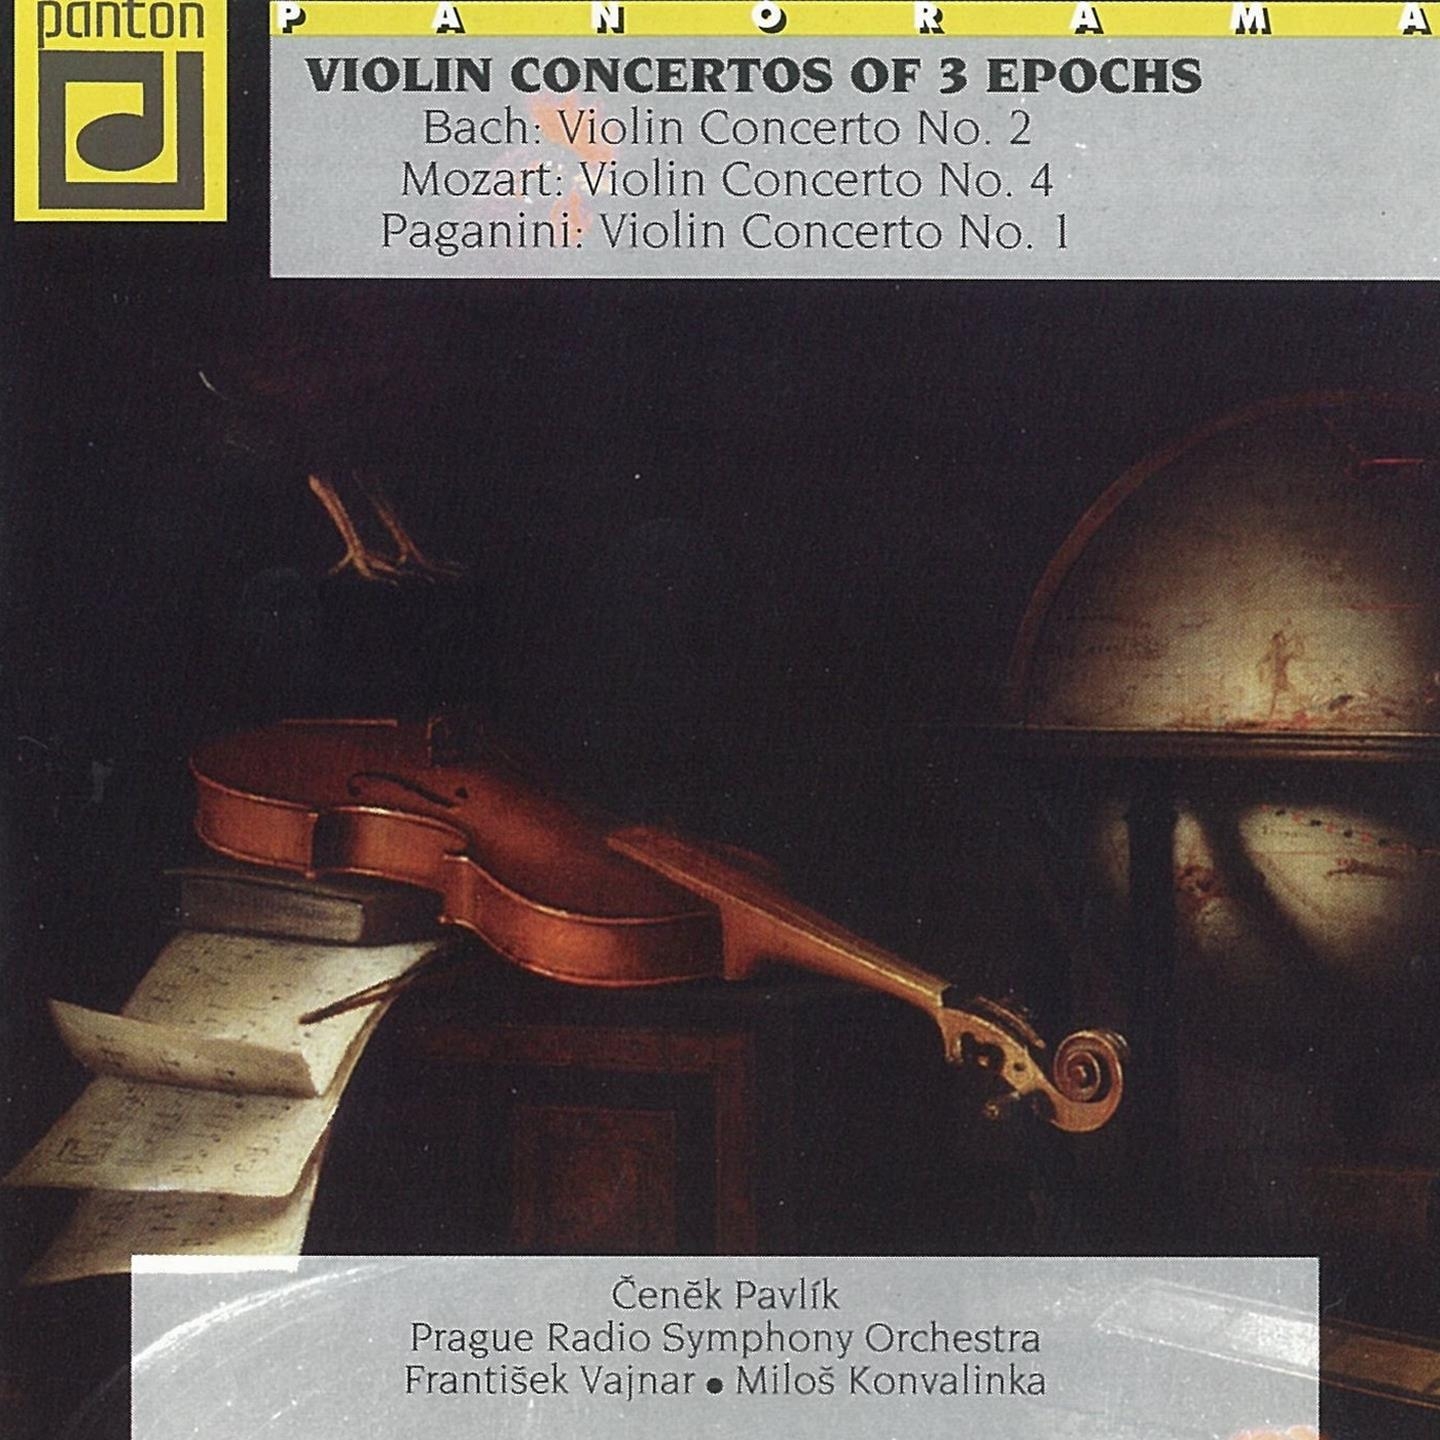 Violin Concerto No. 1 in D Major, Op. 6: II. Adagio